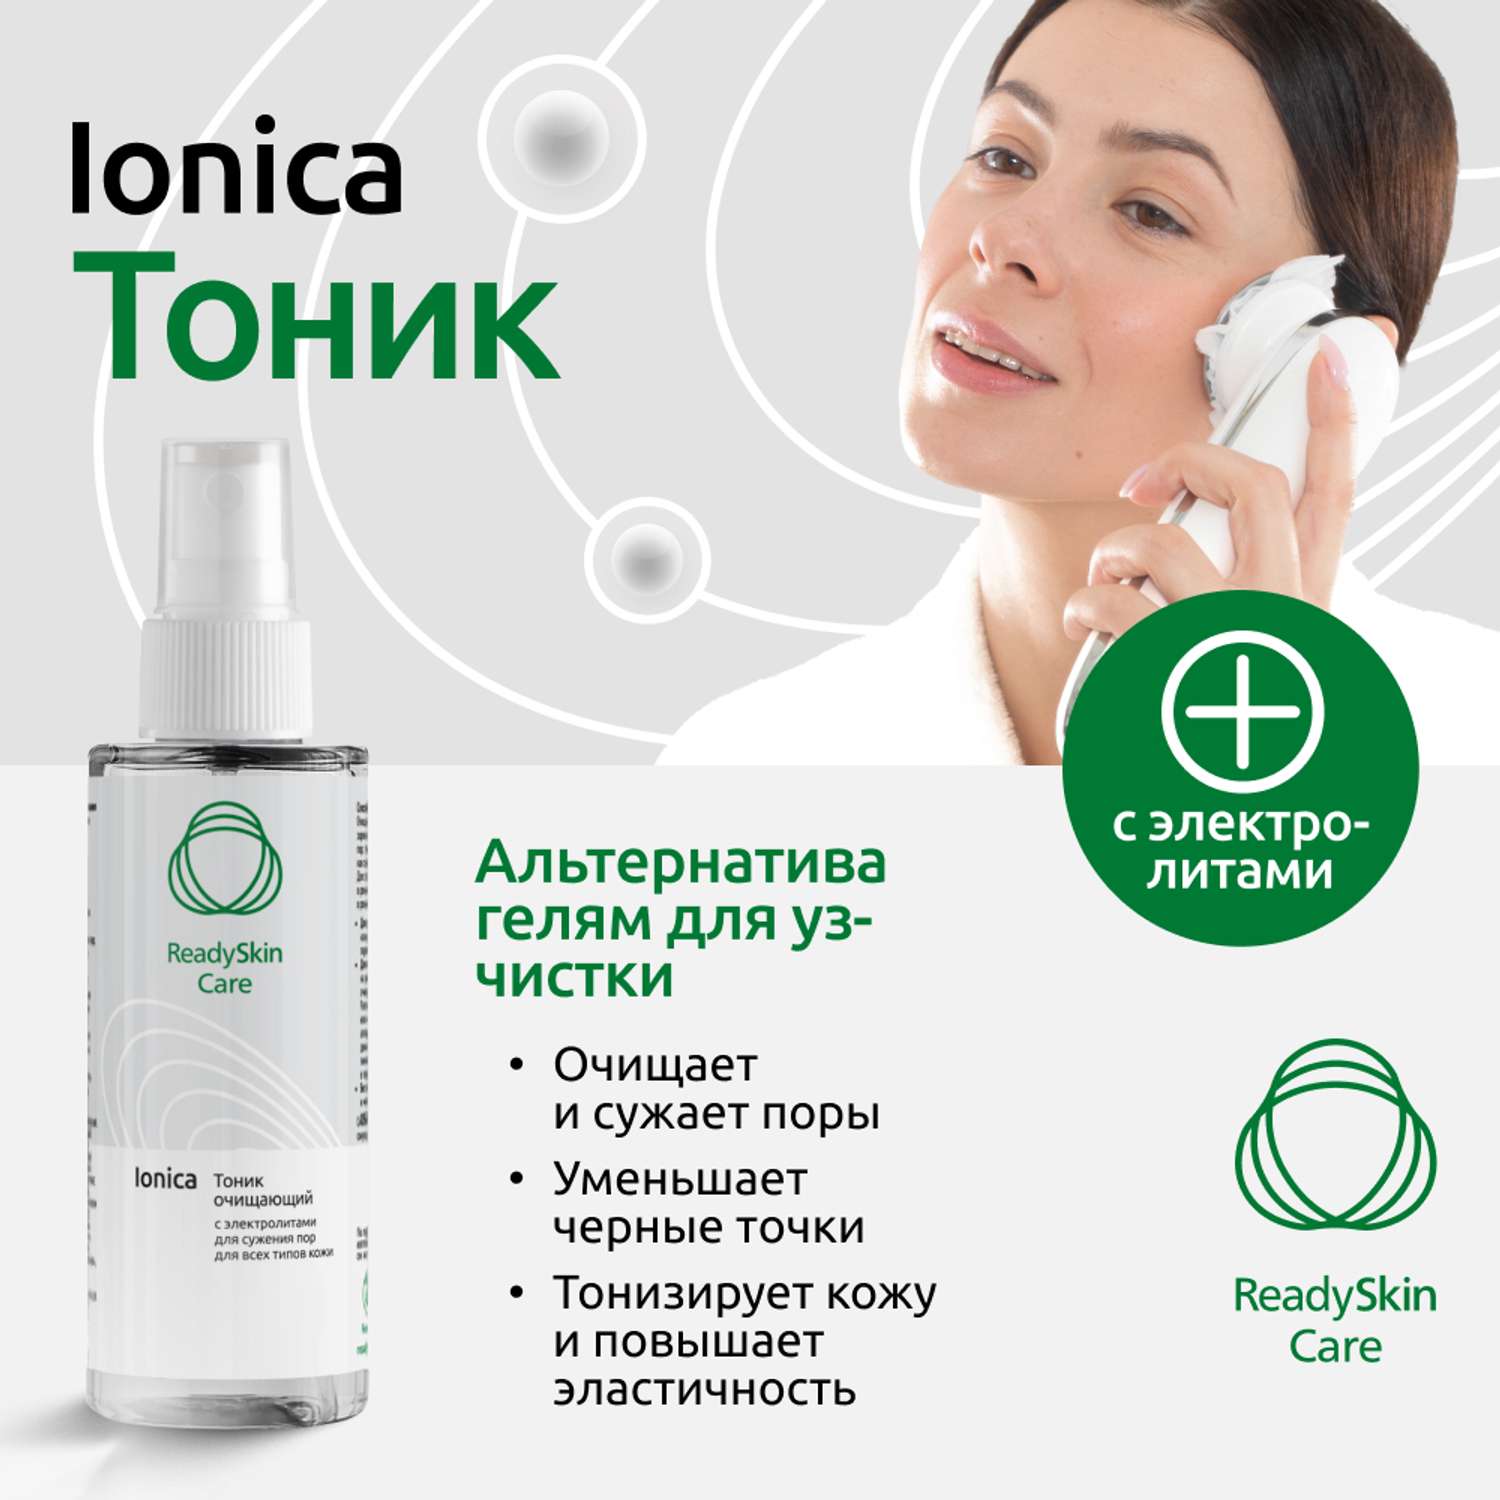 Тоник очищающий ReadySkin Care Ionica для сужения пор и для всех типов кожи 150 мл - фото 2